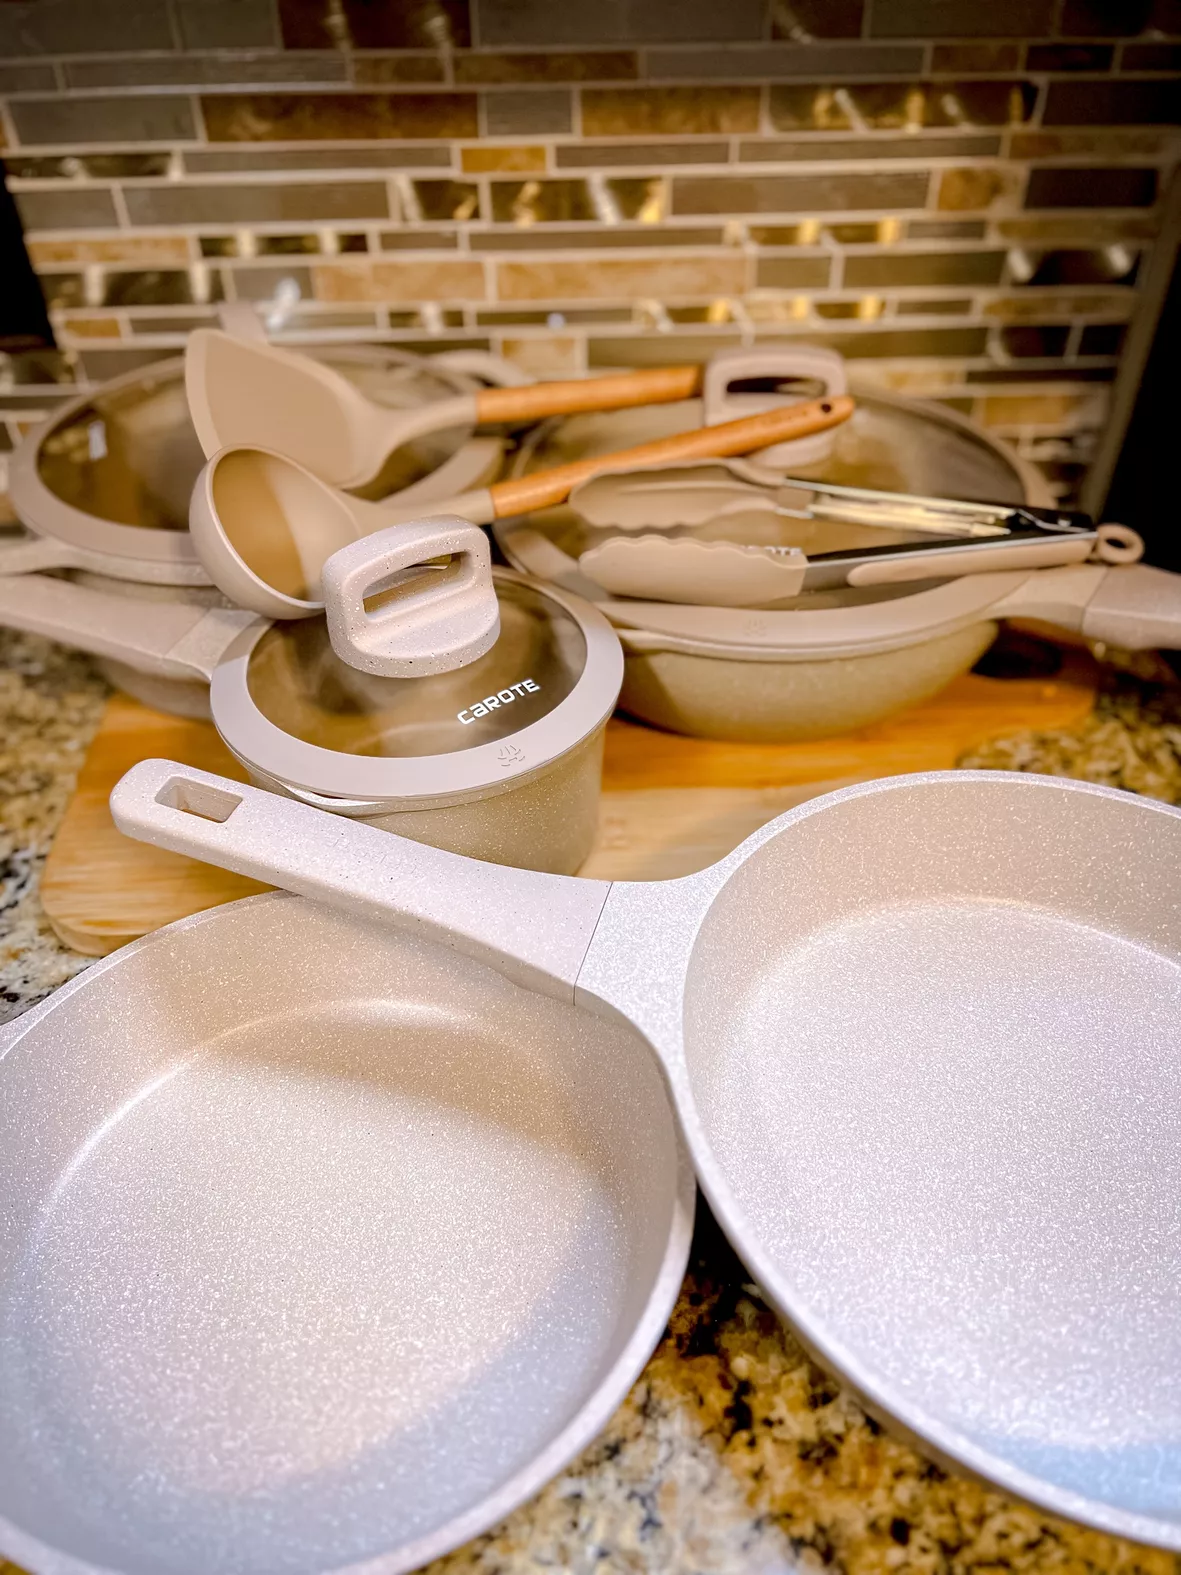 Umite Chef kitchen utensils set  sale